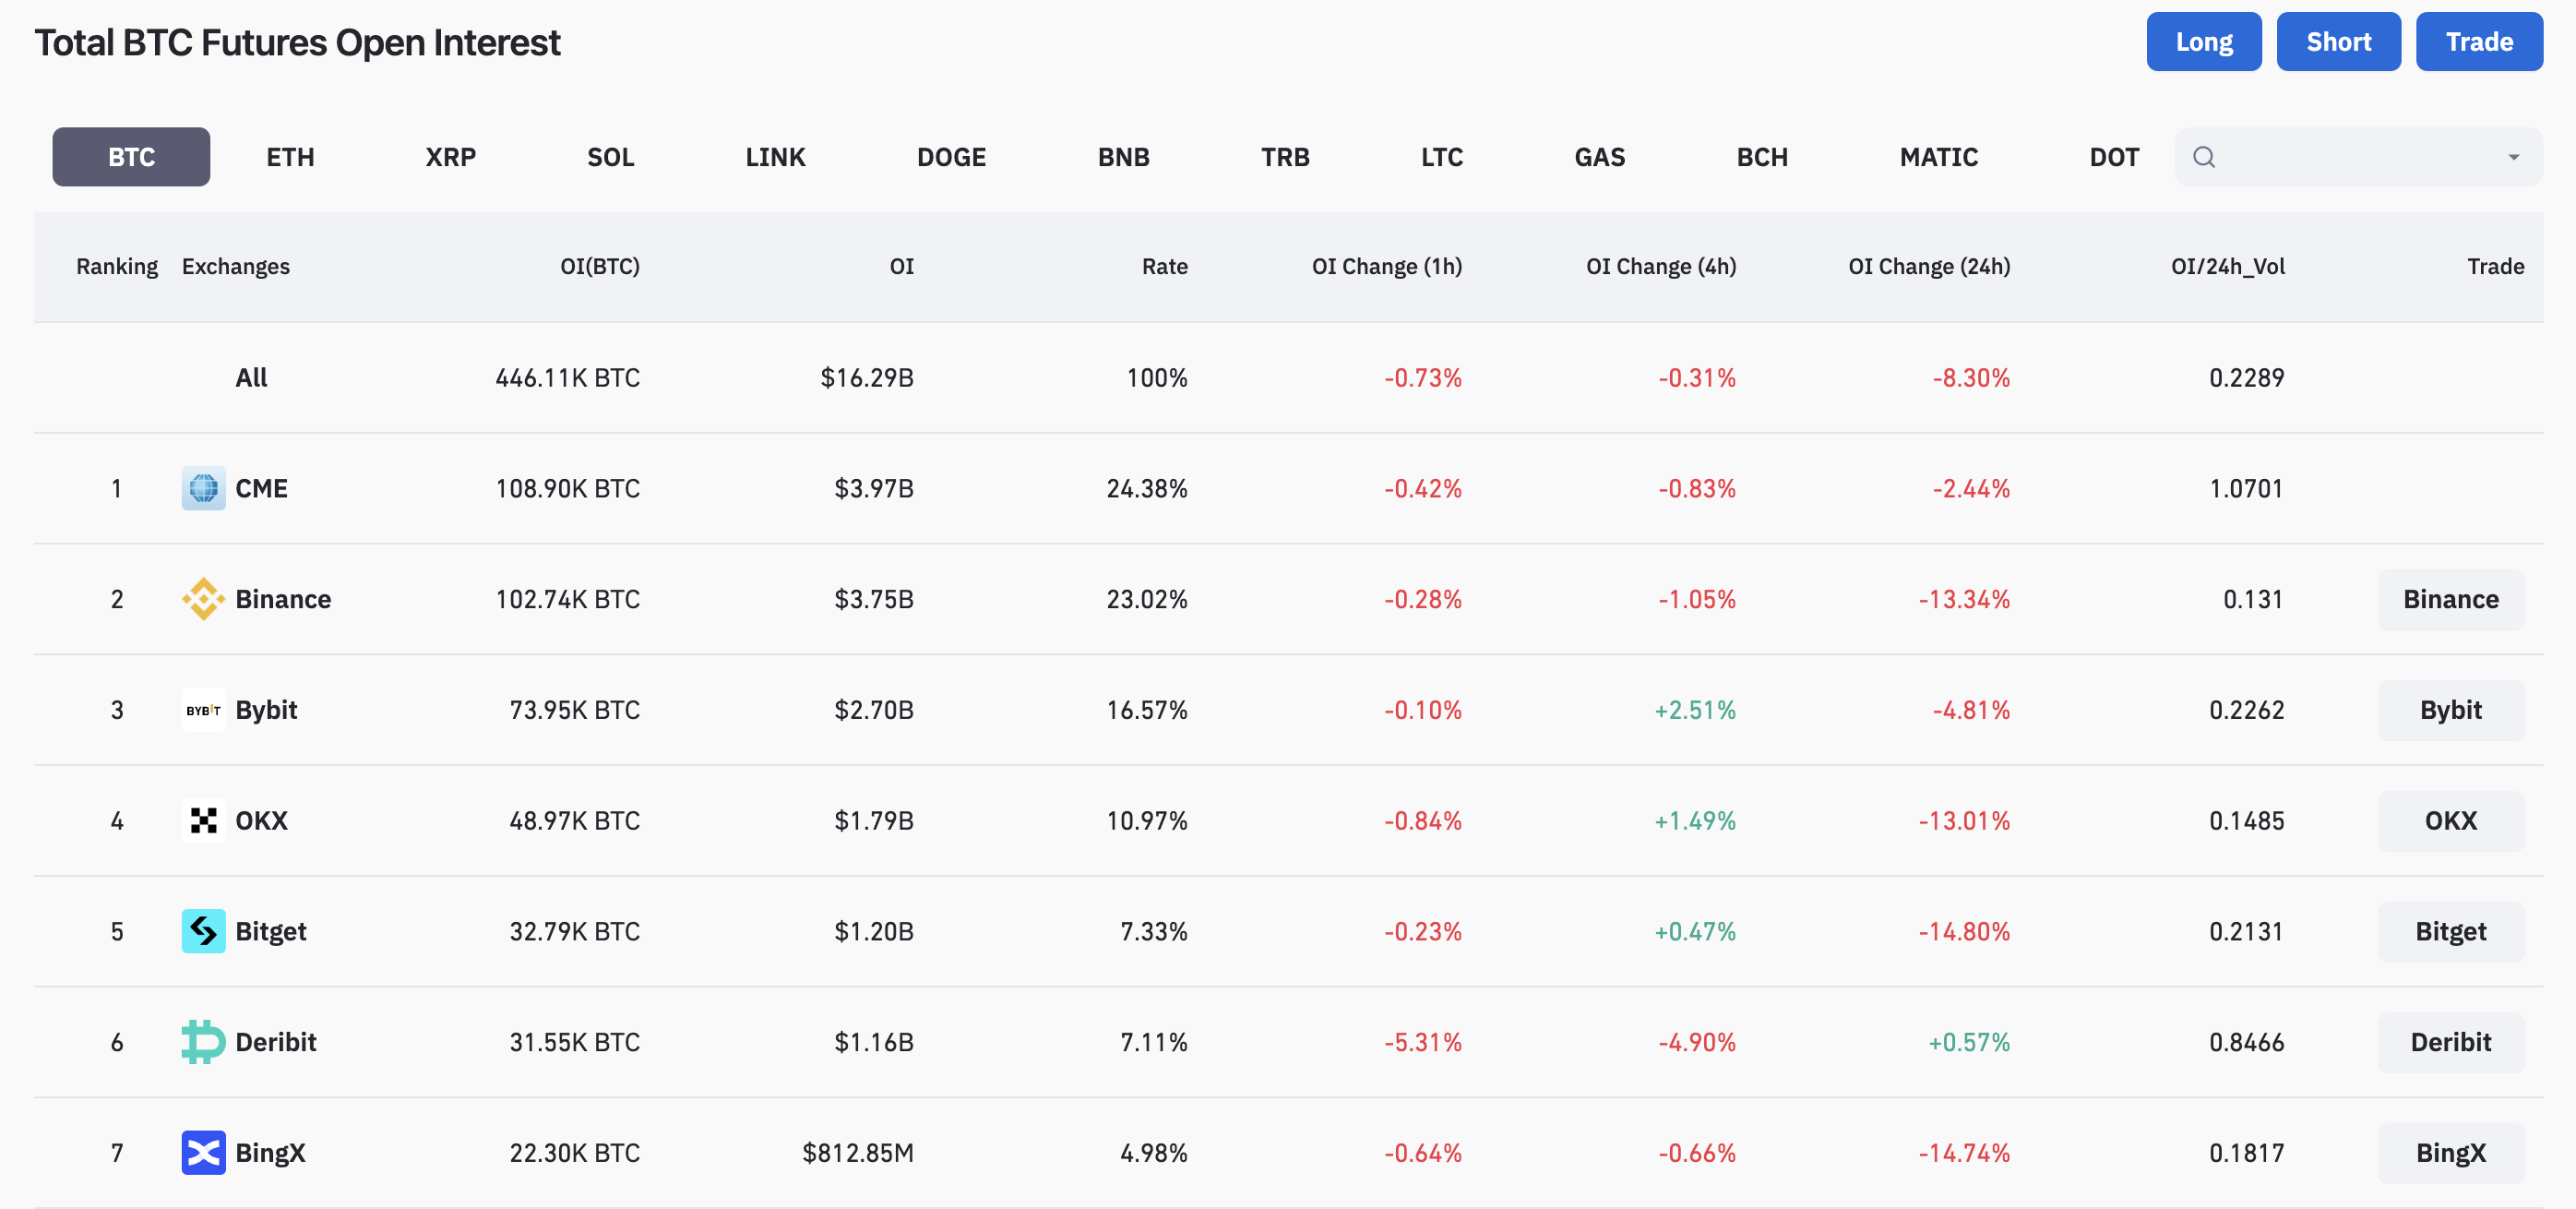 Рейтинг бирж по открытому интересу на фьючерсы на биткоин. Источник: Coinglass